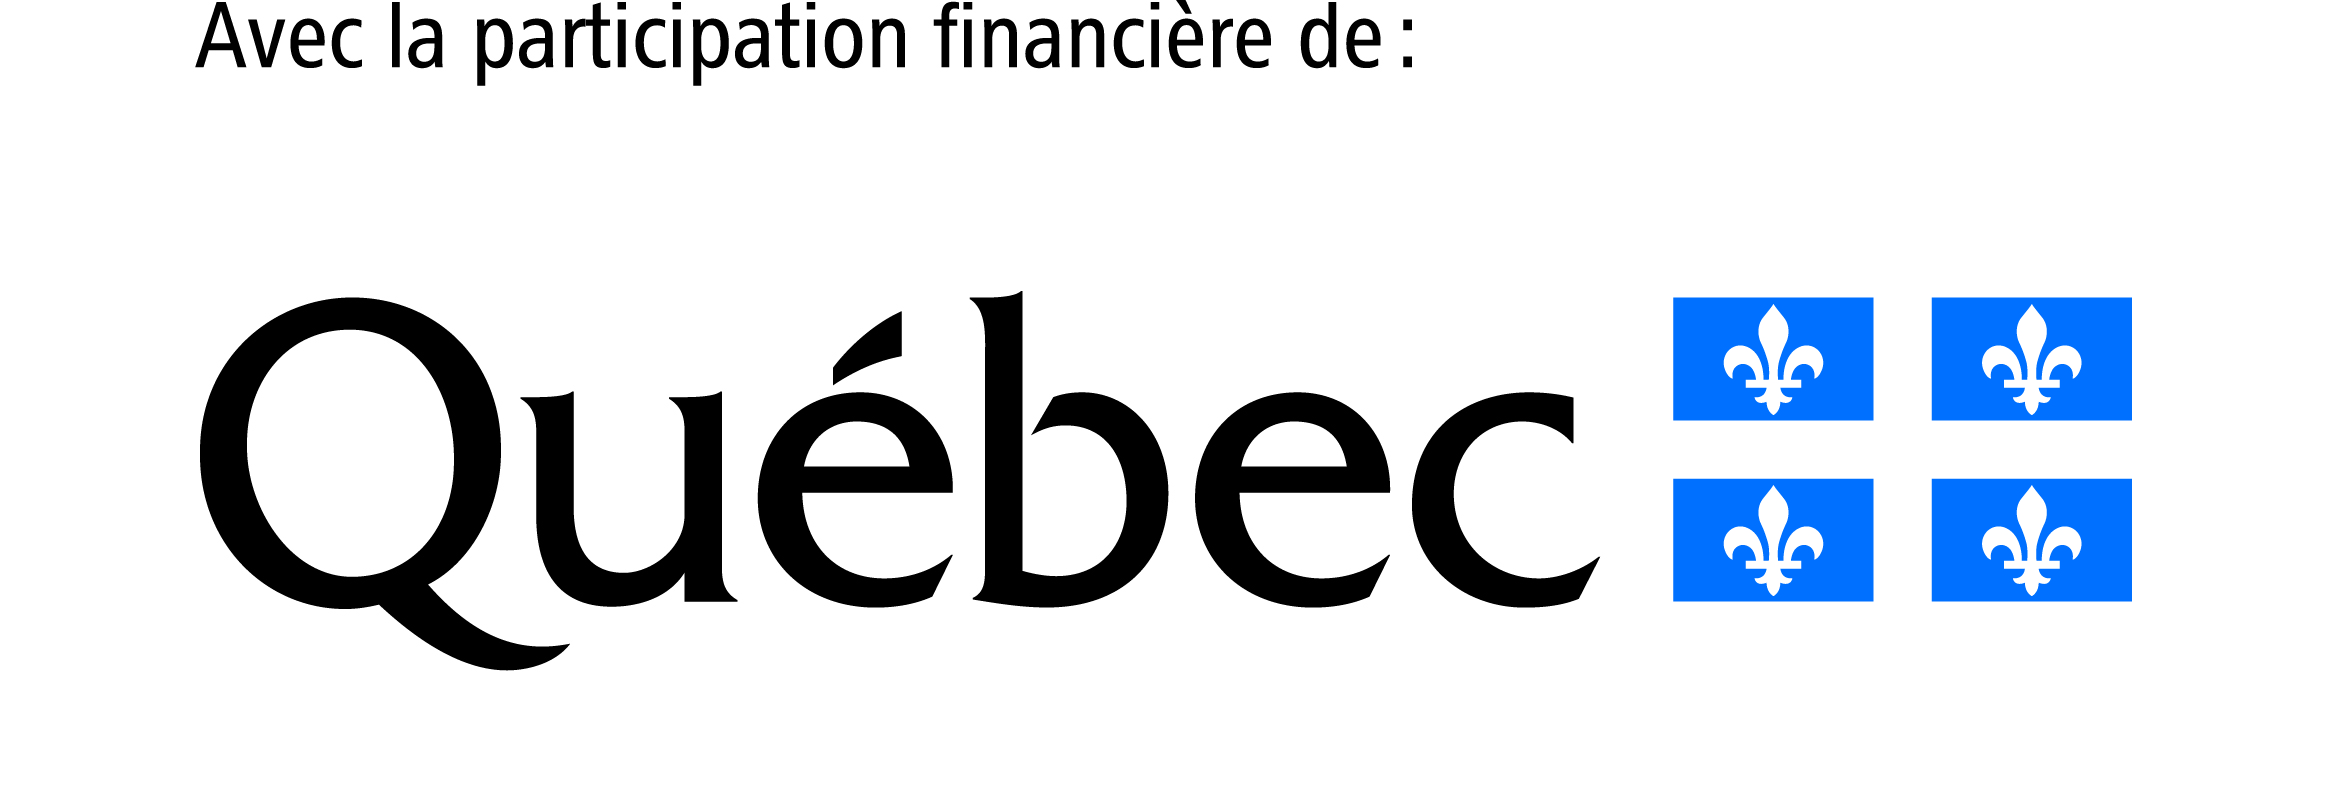 Avec la participation financière de Québec.